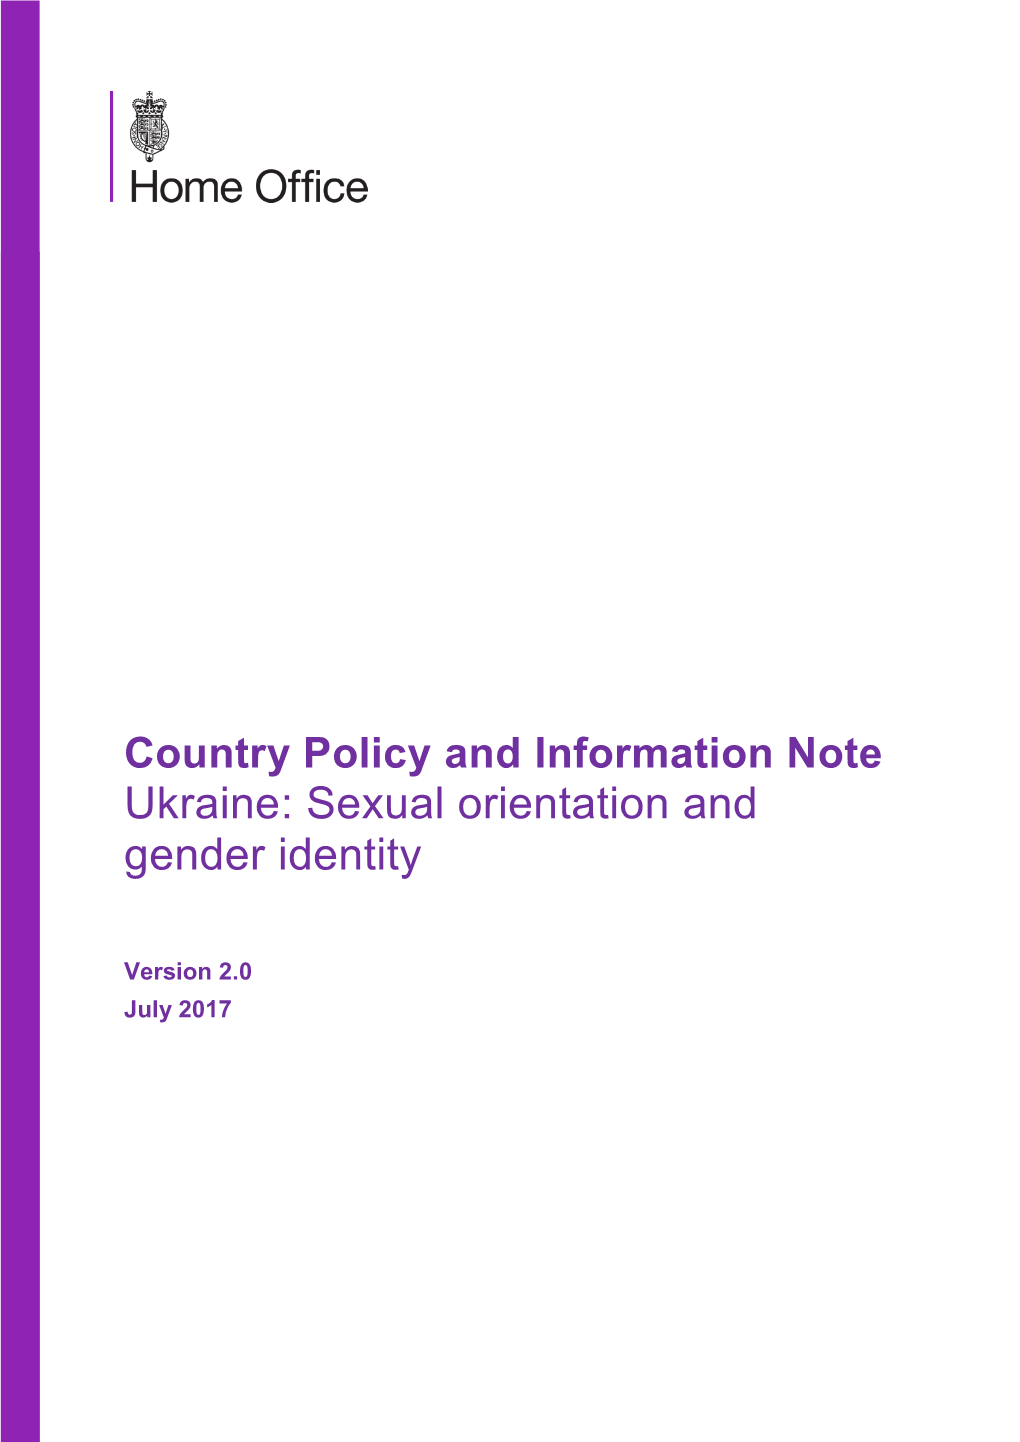 Ukraine: Sexual Orientation and Gender Identity